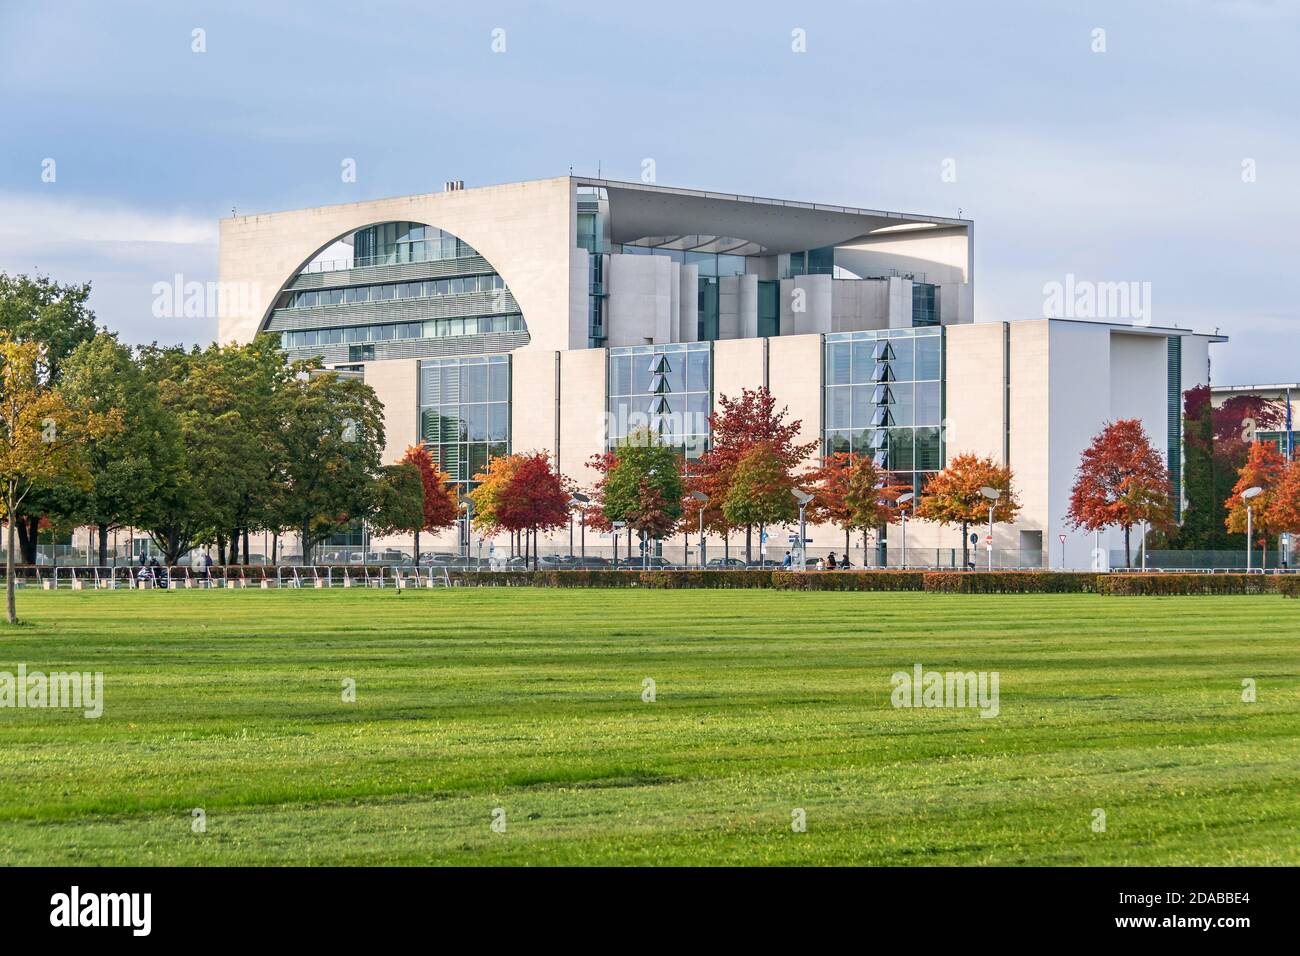 Berlin, Deutschland - 20. Oktober 2020: Grüner Rasen auf dem Platz der Republik, gesäumt von herbstbunten Bäumen und dem Gebäude der G Stockfoto